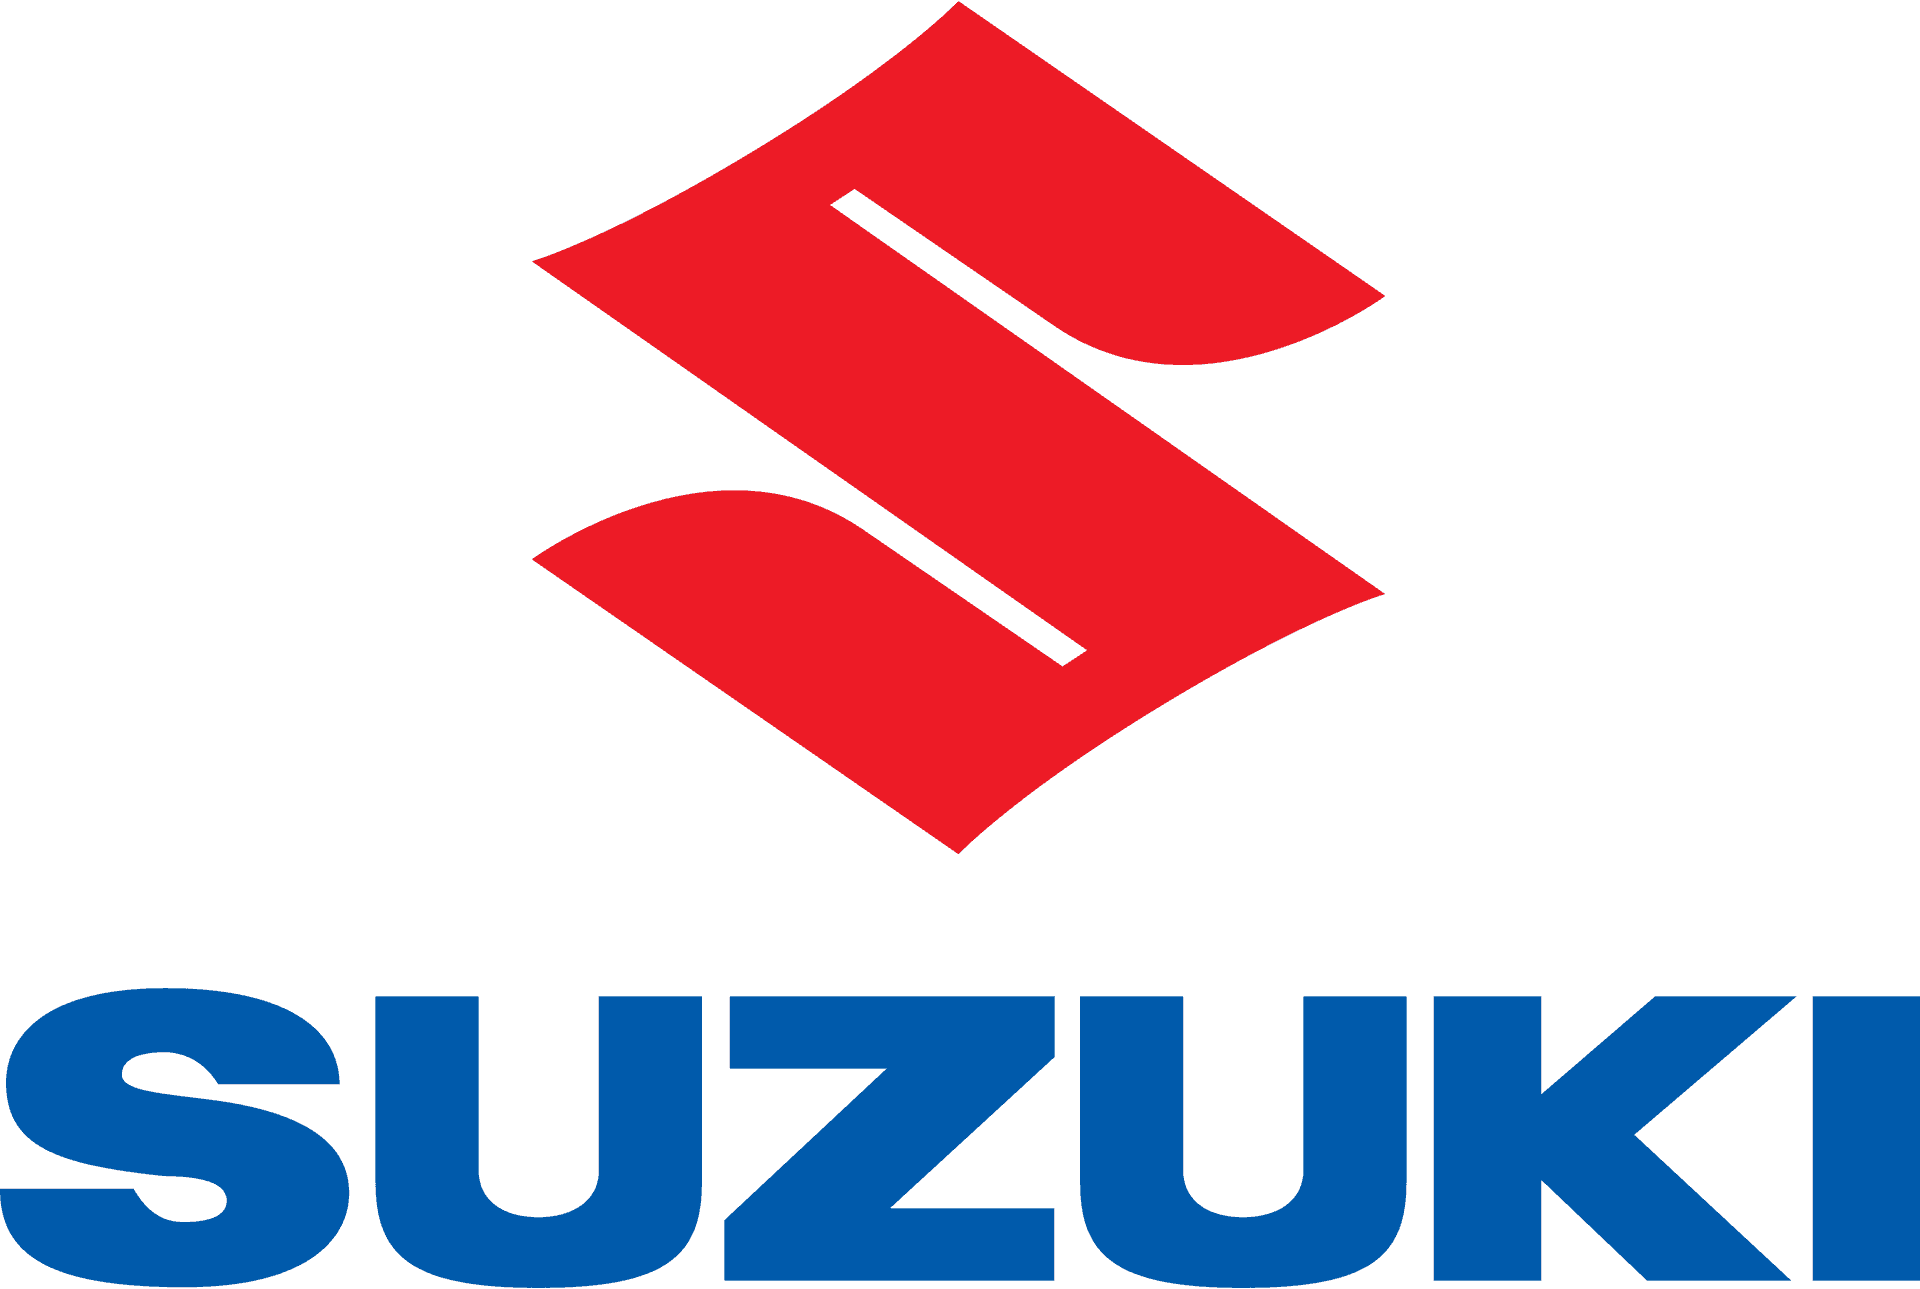 Suzuki Logo Redand Blue PNG